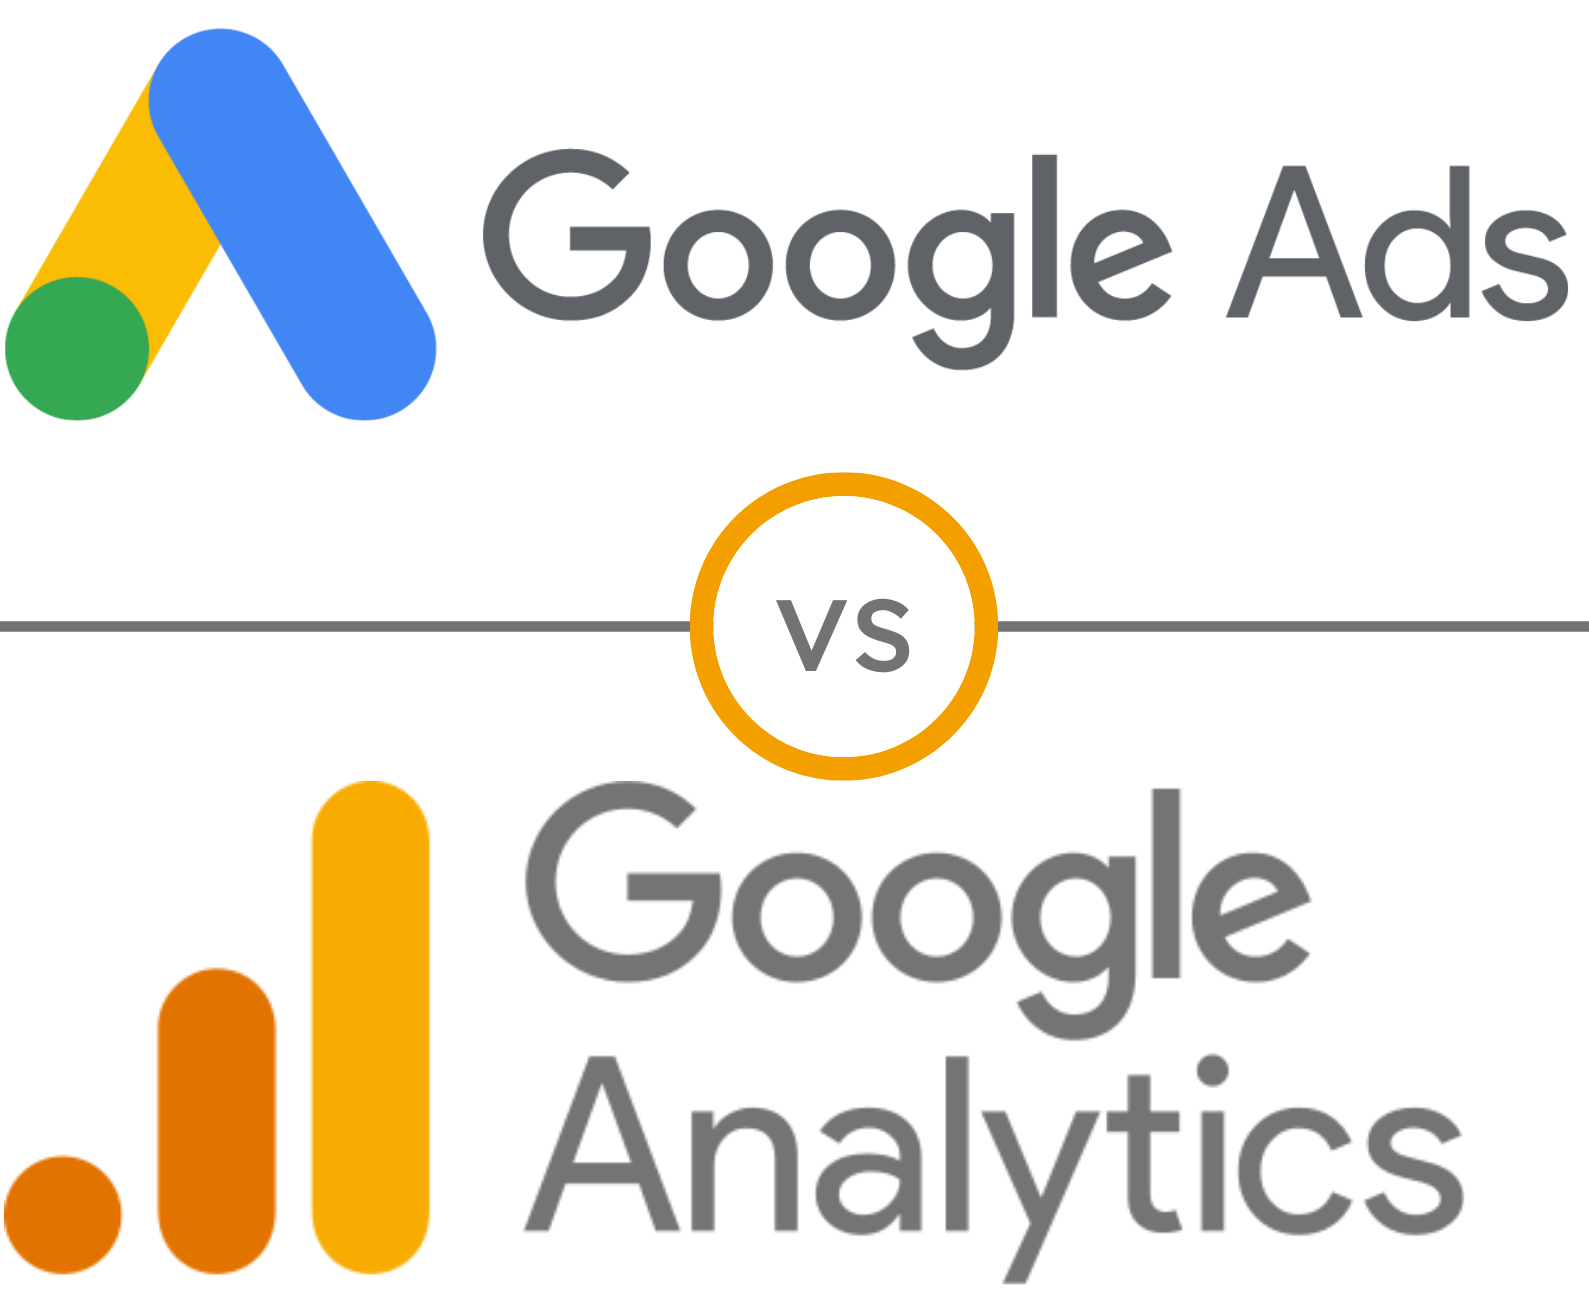 Google Ads logo vs Google Analytics logo